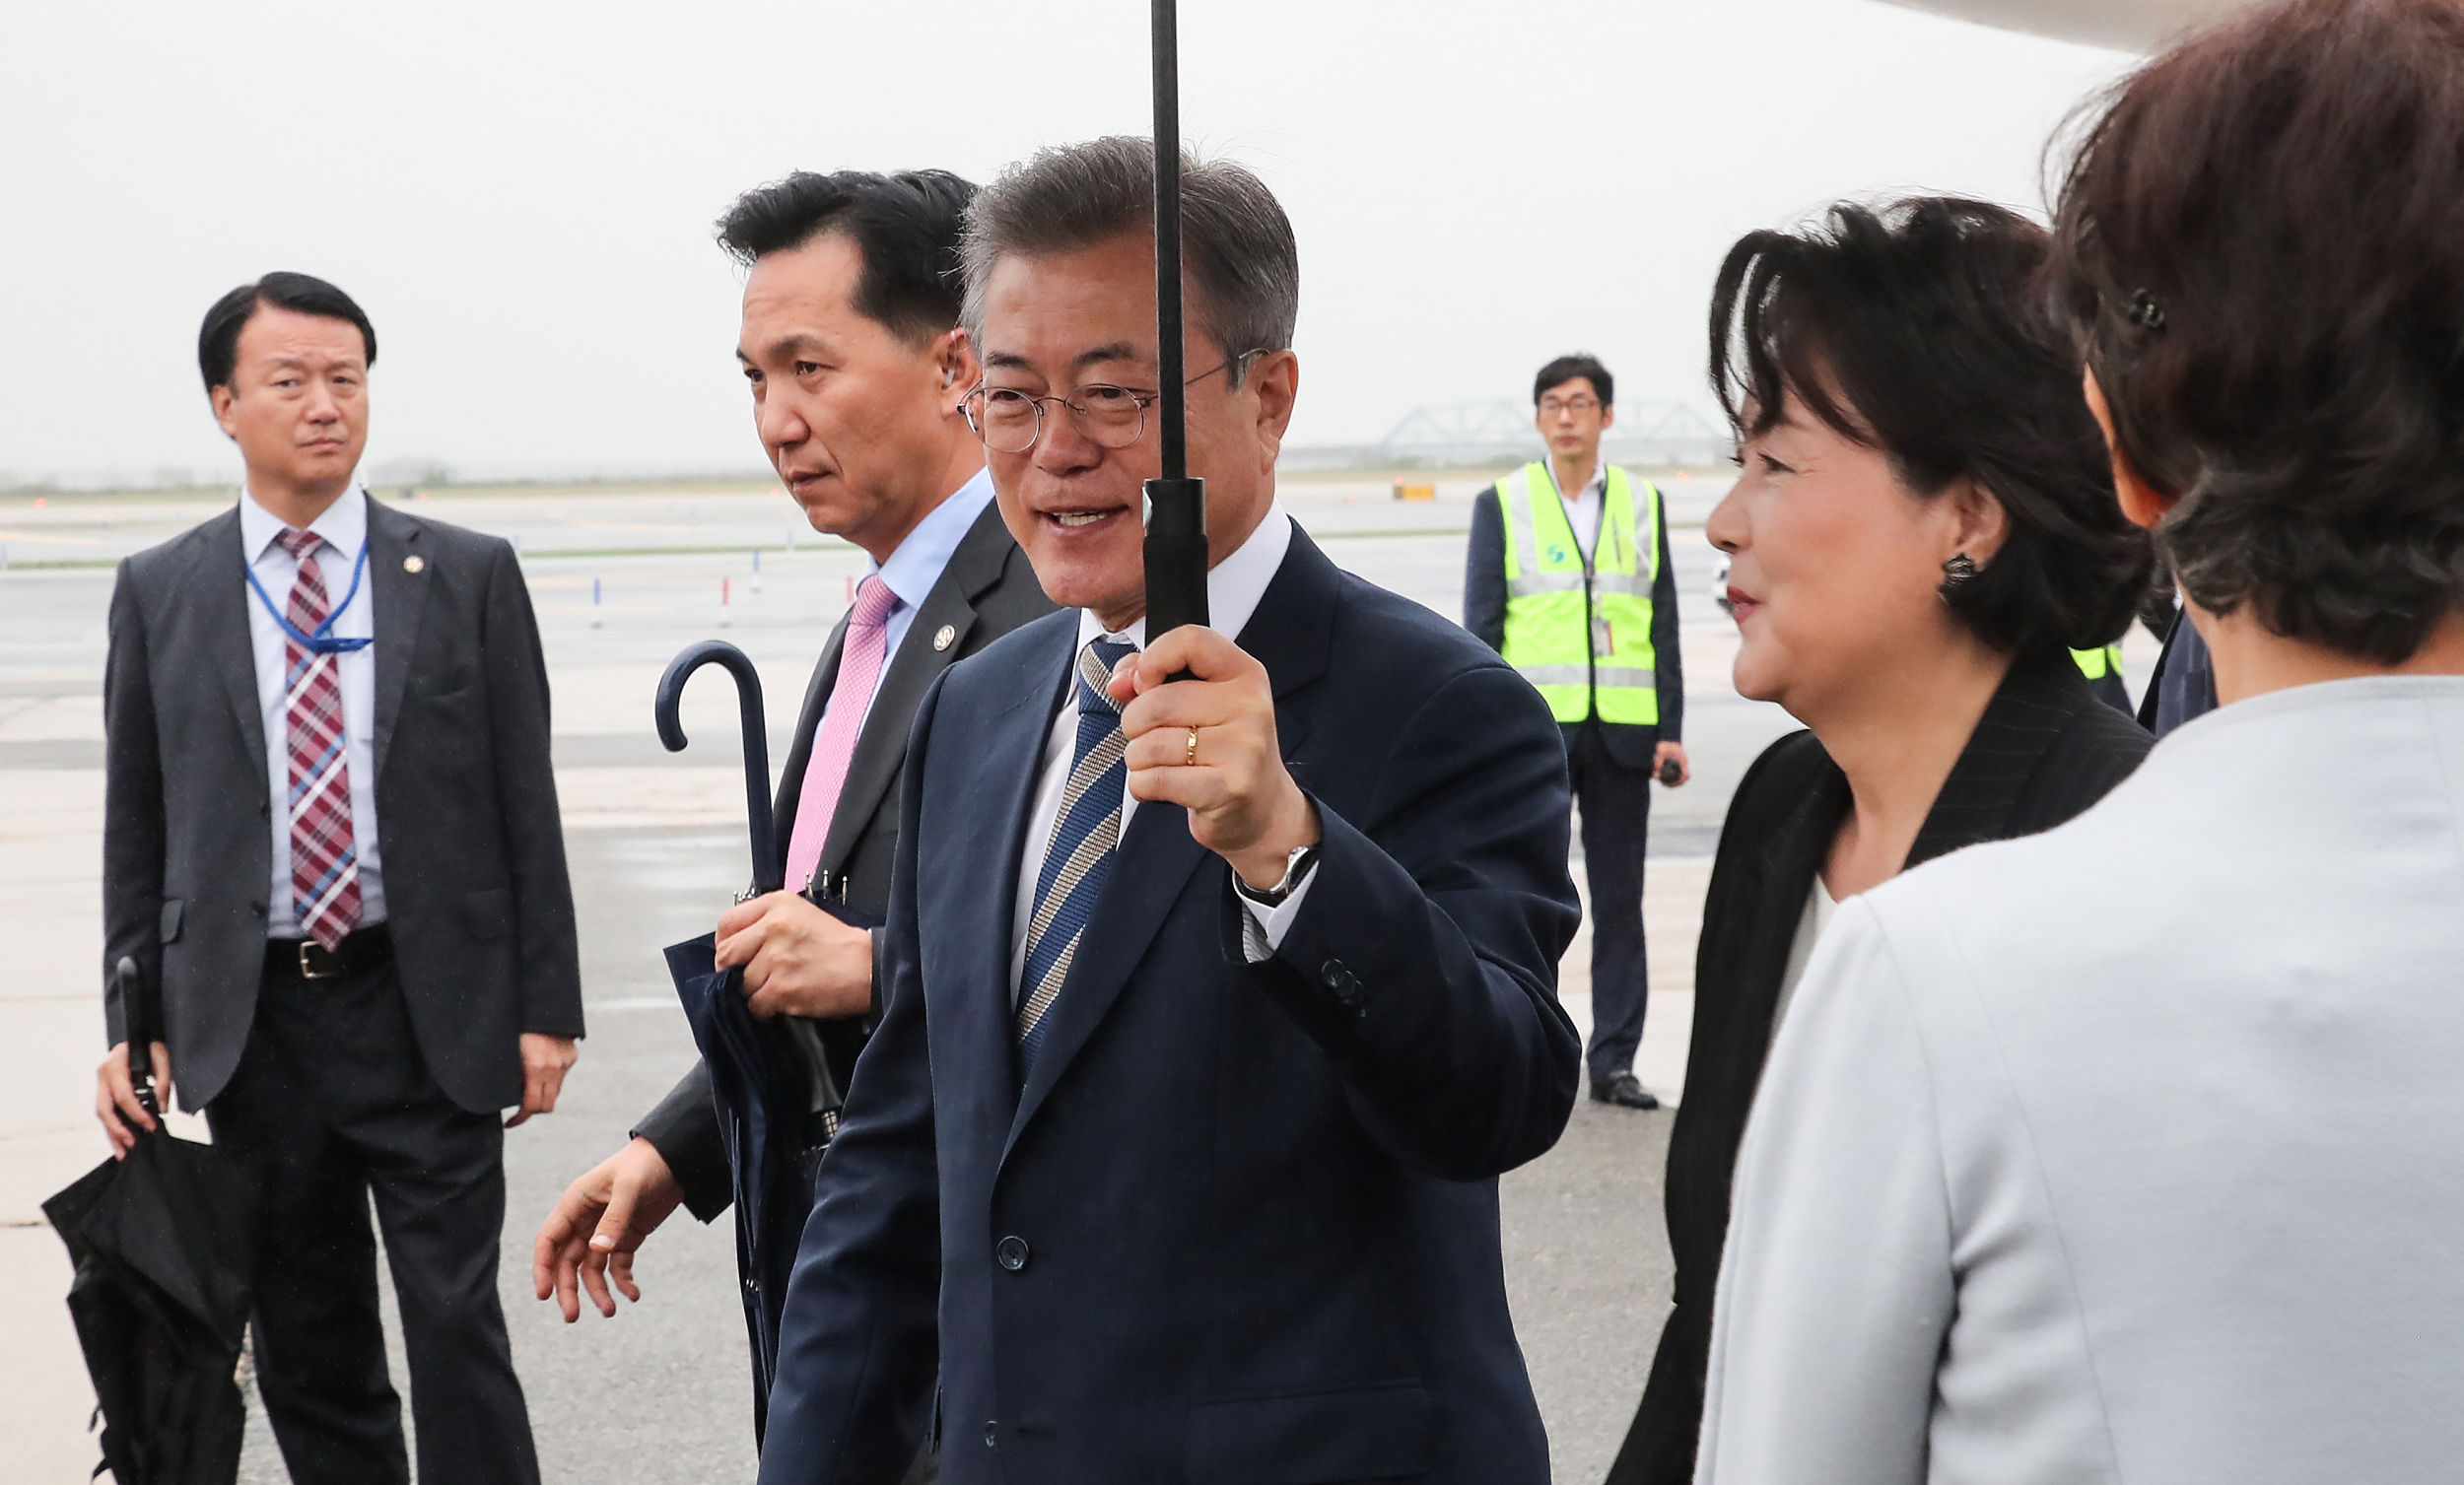 韩国总统文在寅冒雨抵达纽约 将出席联合国大会